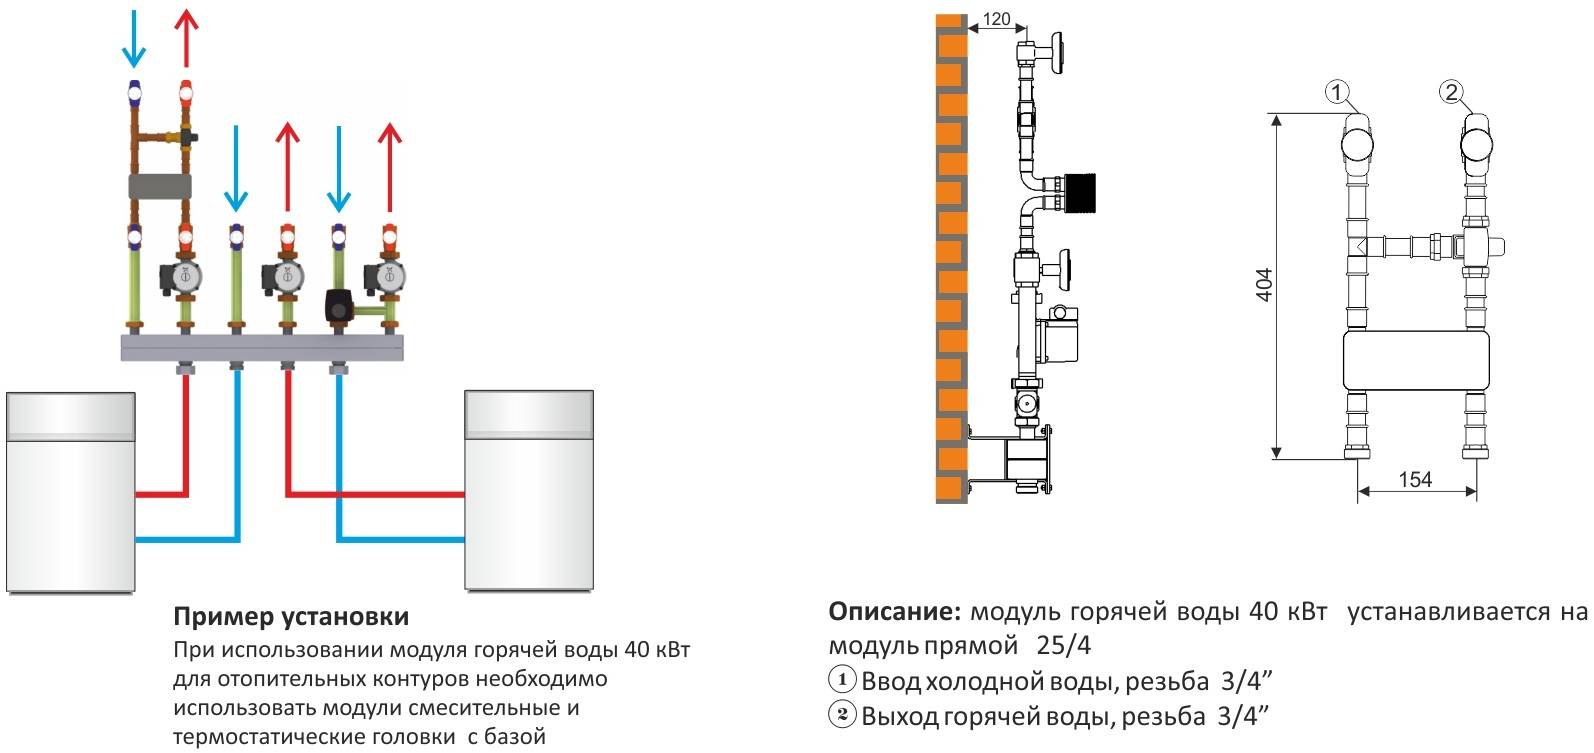 Термостат для котла отопления: принцип работы регулятора и описание, виды, установка и настройка устройства